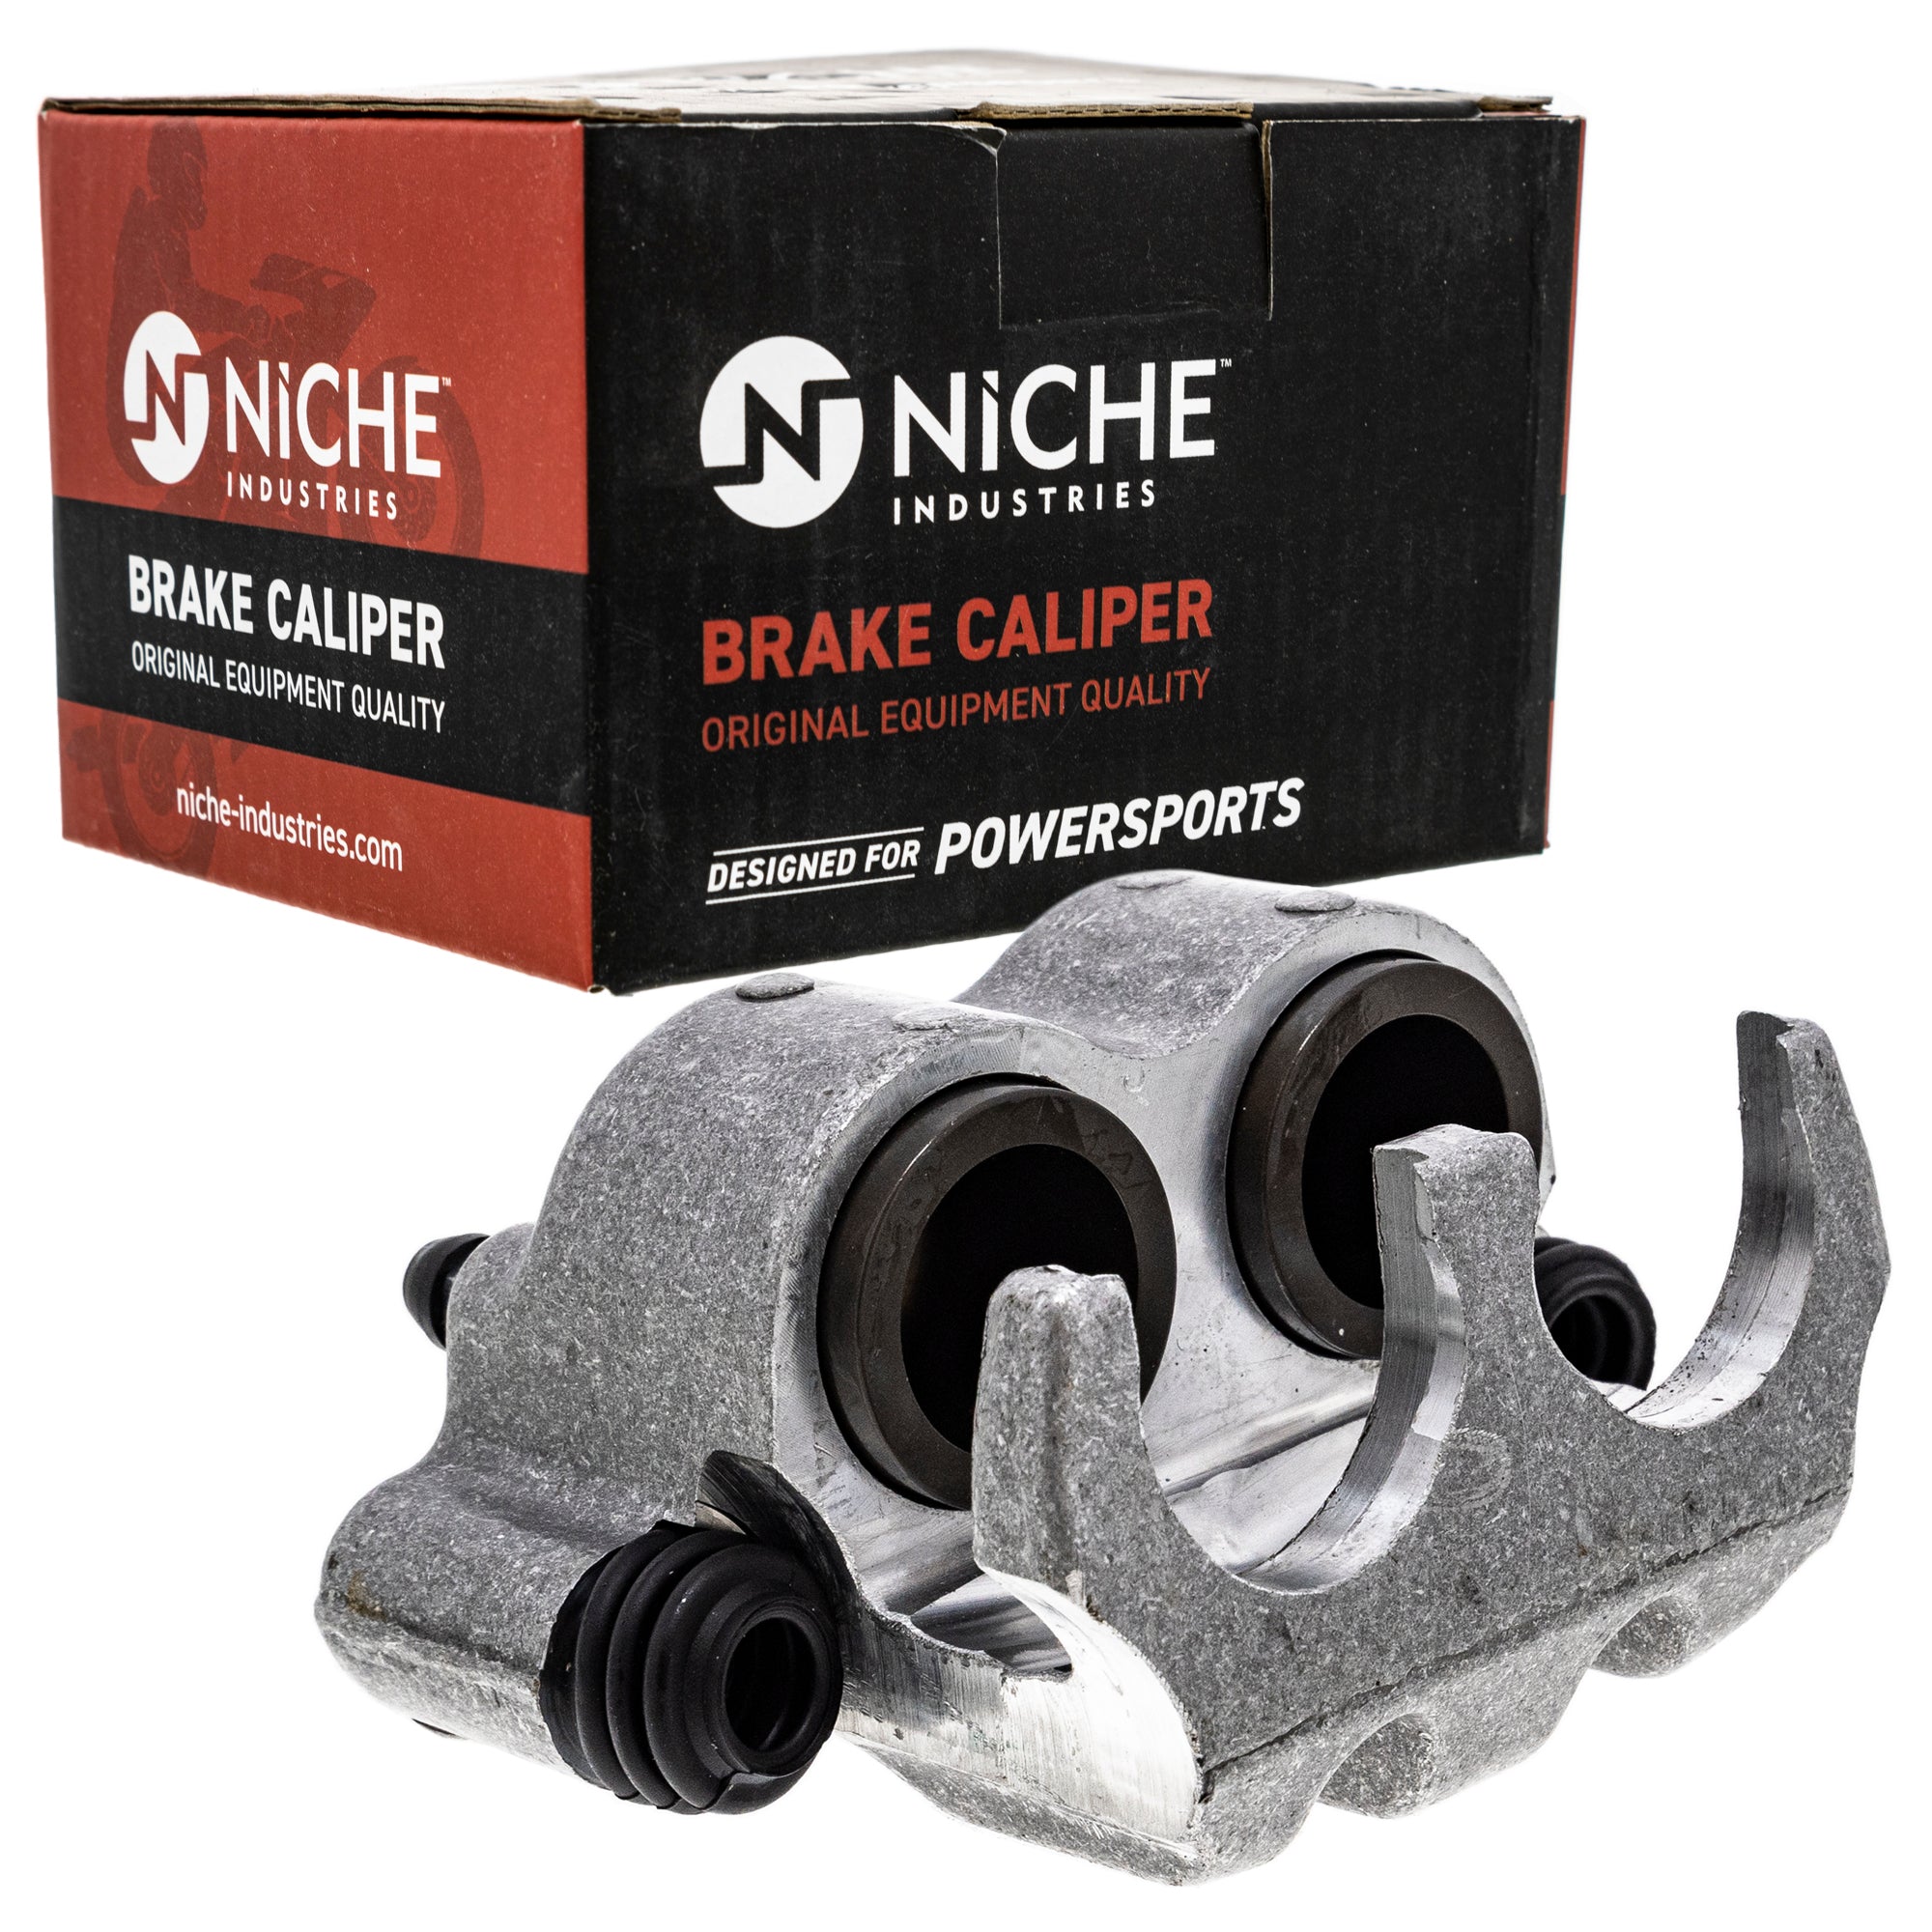 NICHE MK1001051 Brake Caliper Kit